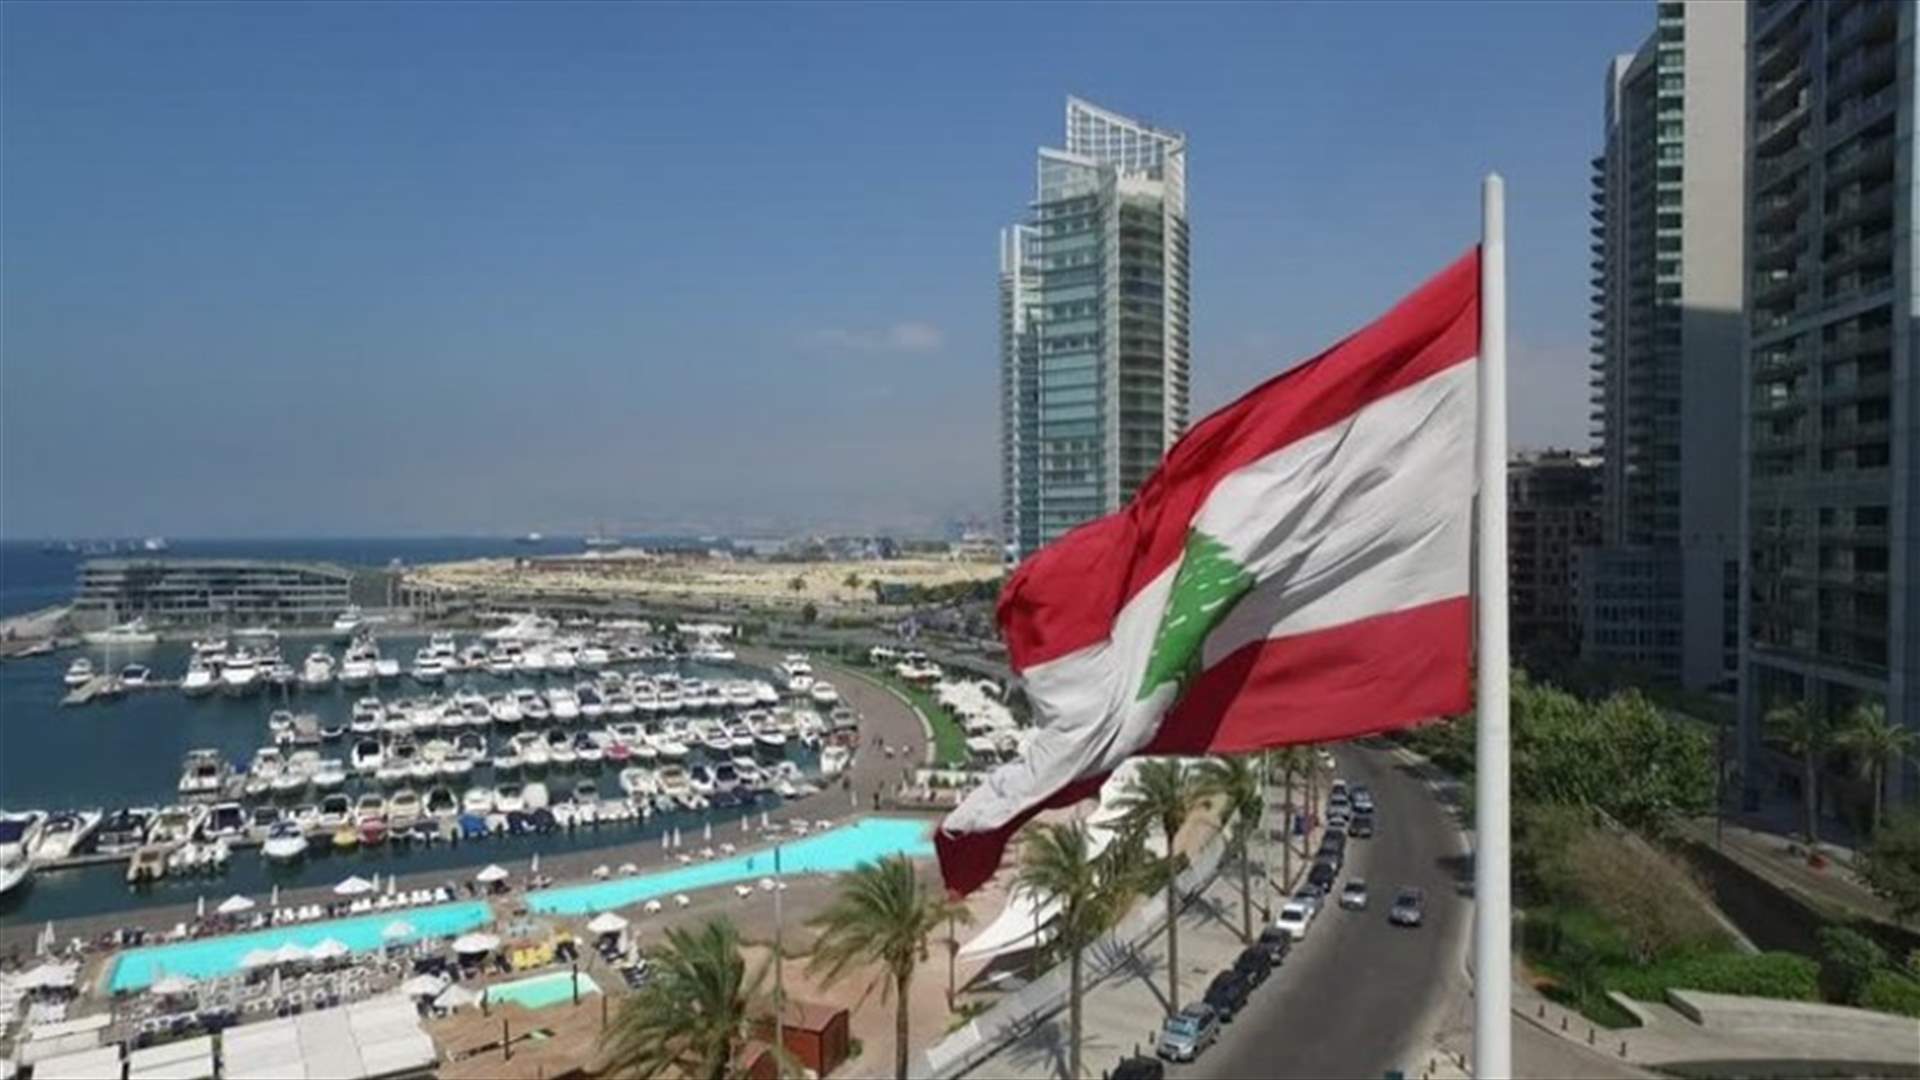 لبنان لم يُدع إلى مؤتمر البحرين وتوجه للاعتذار في حال وصلت دعوة (الشرق الأوسط)